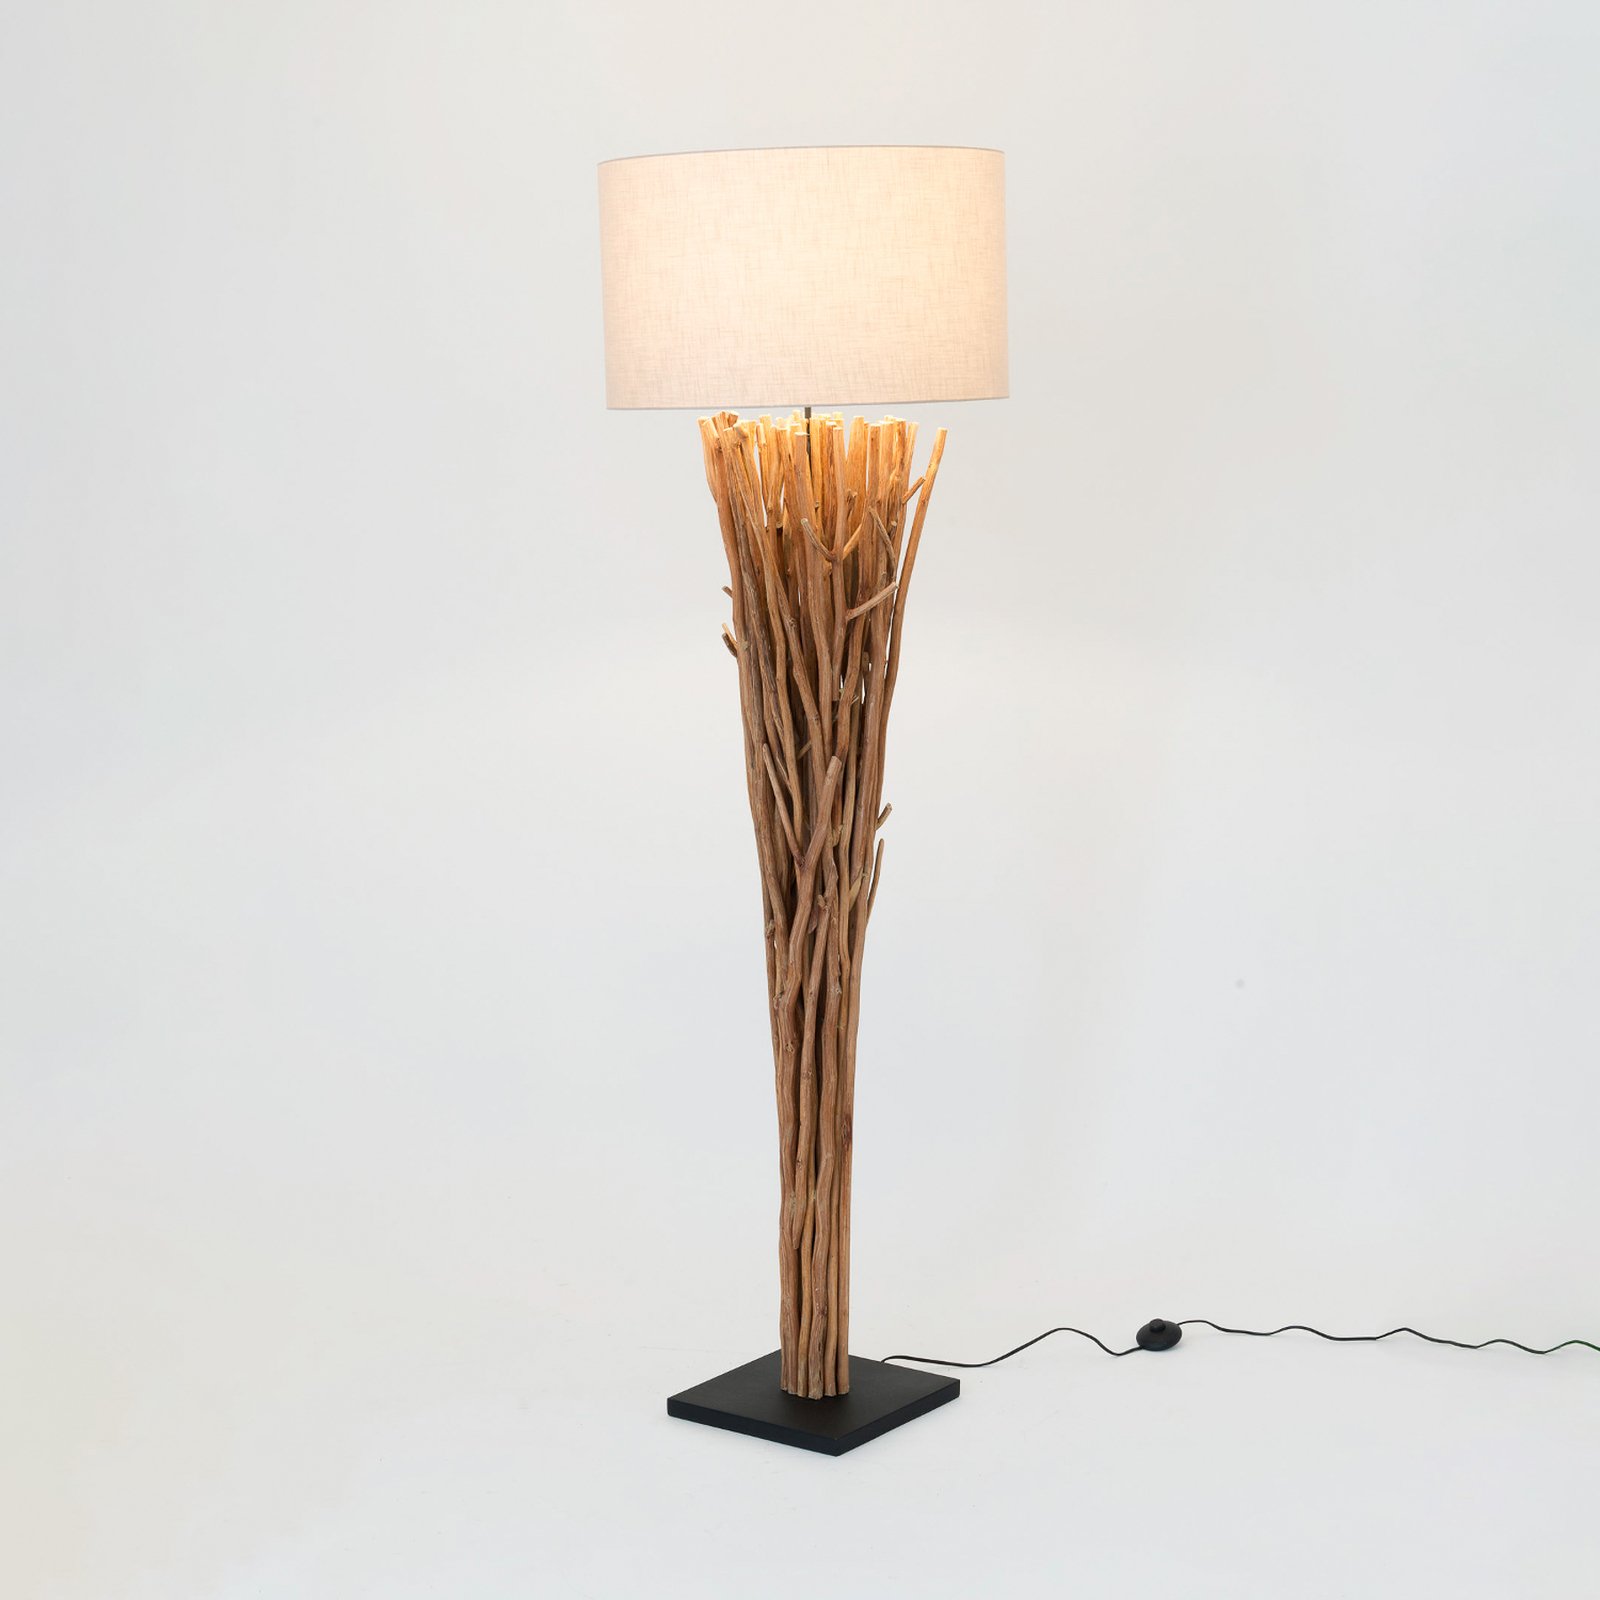 Lampe sur pied Palmaria, couleur bois/beige, hauteur 177 cm, bois